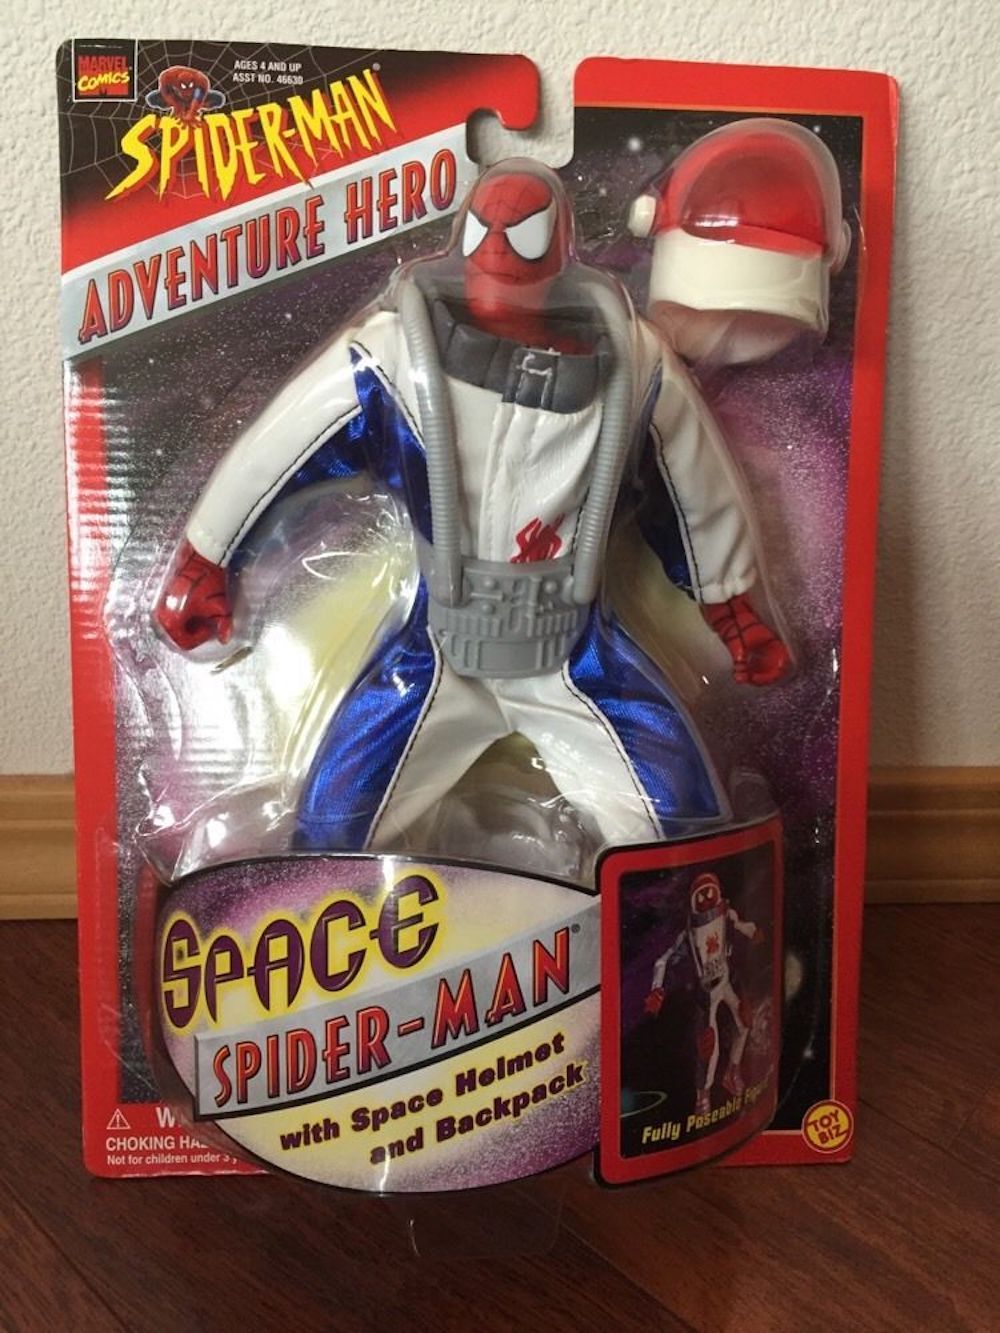 space spider-man